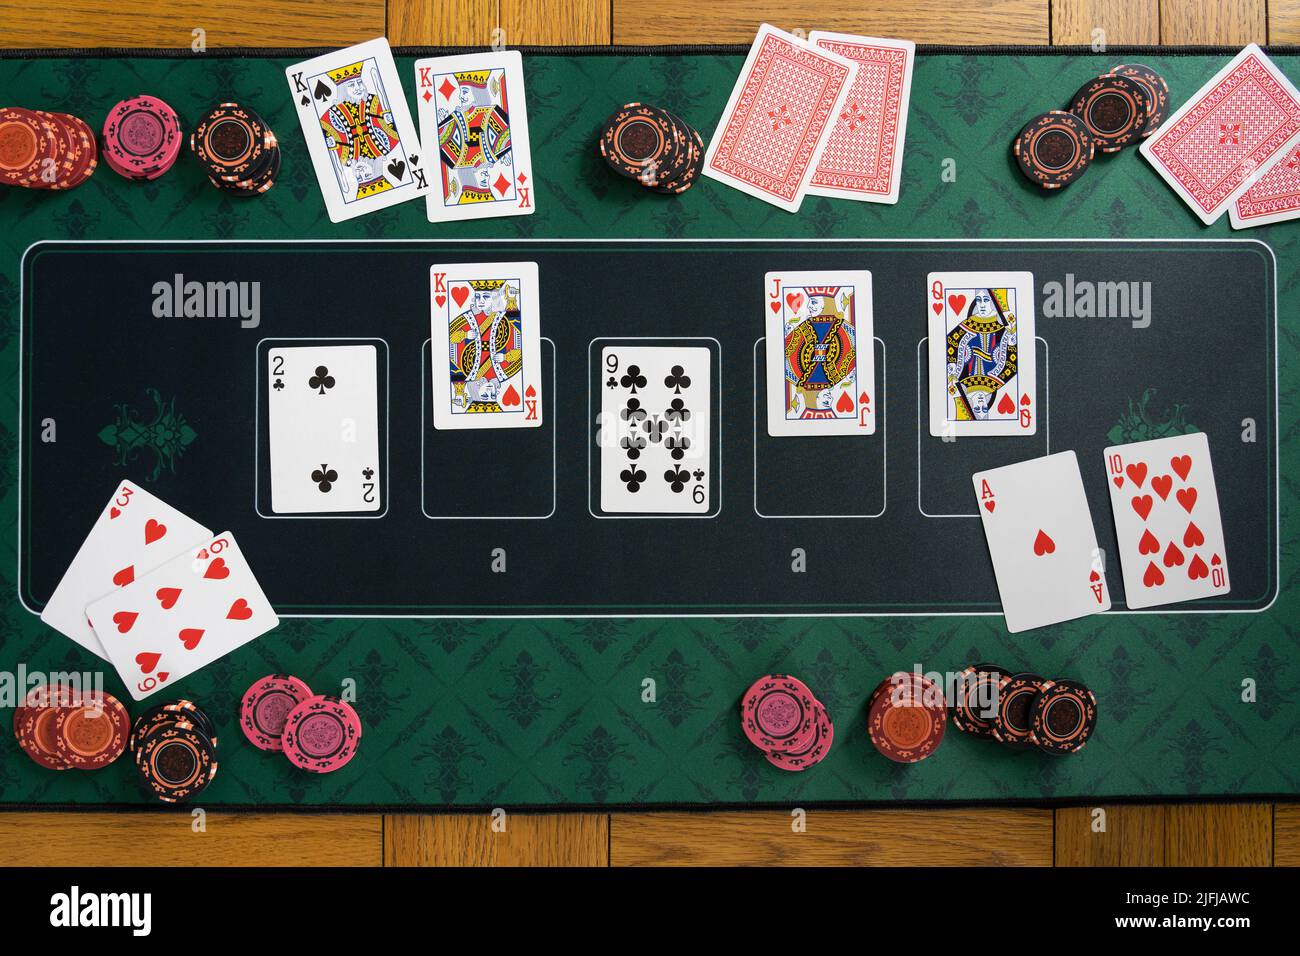 Blick auf eine königliche gerade bündig gewinnende Hand auf einem Poker texas Hold'em Spielmatte mit Glücksspiel Chip Stacks, Spielkarten und gefalteten Händen Stockfoto